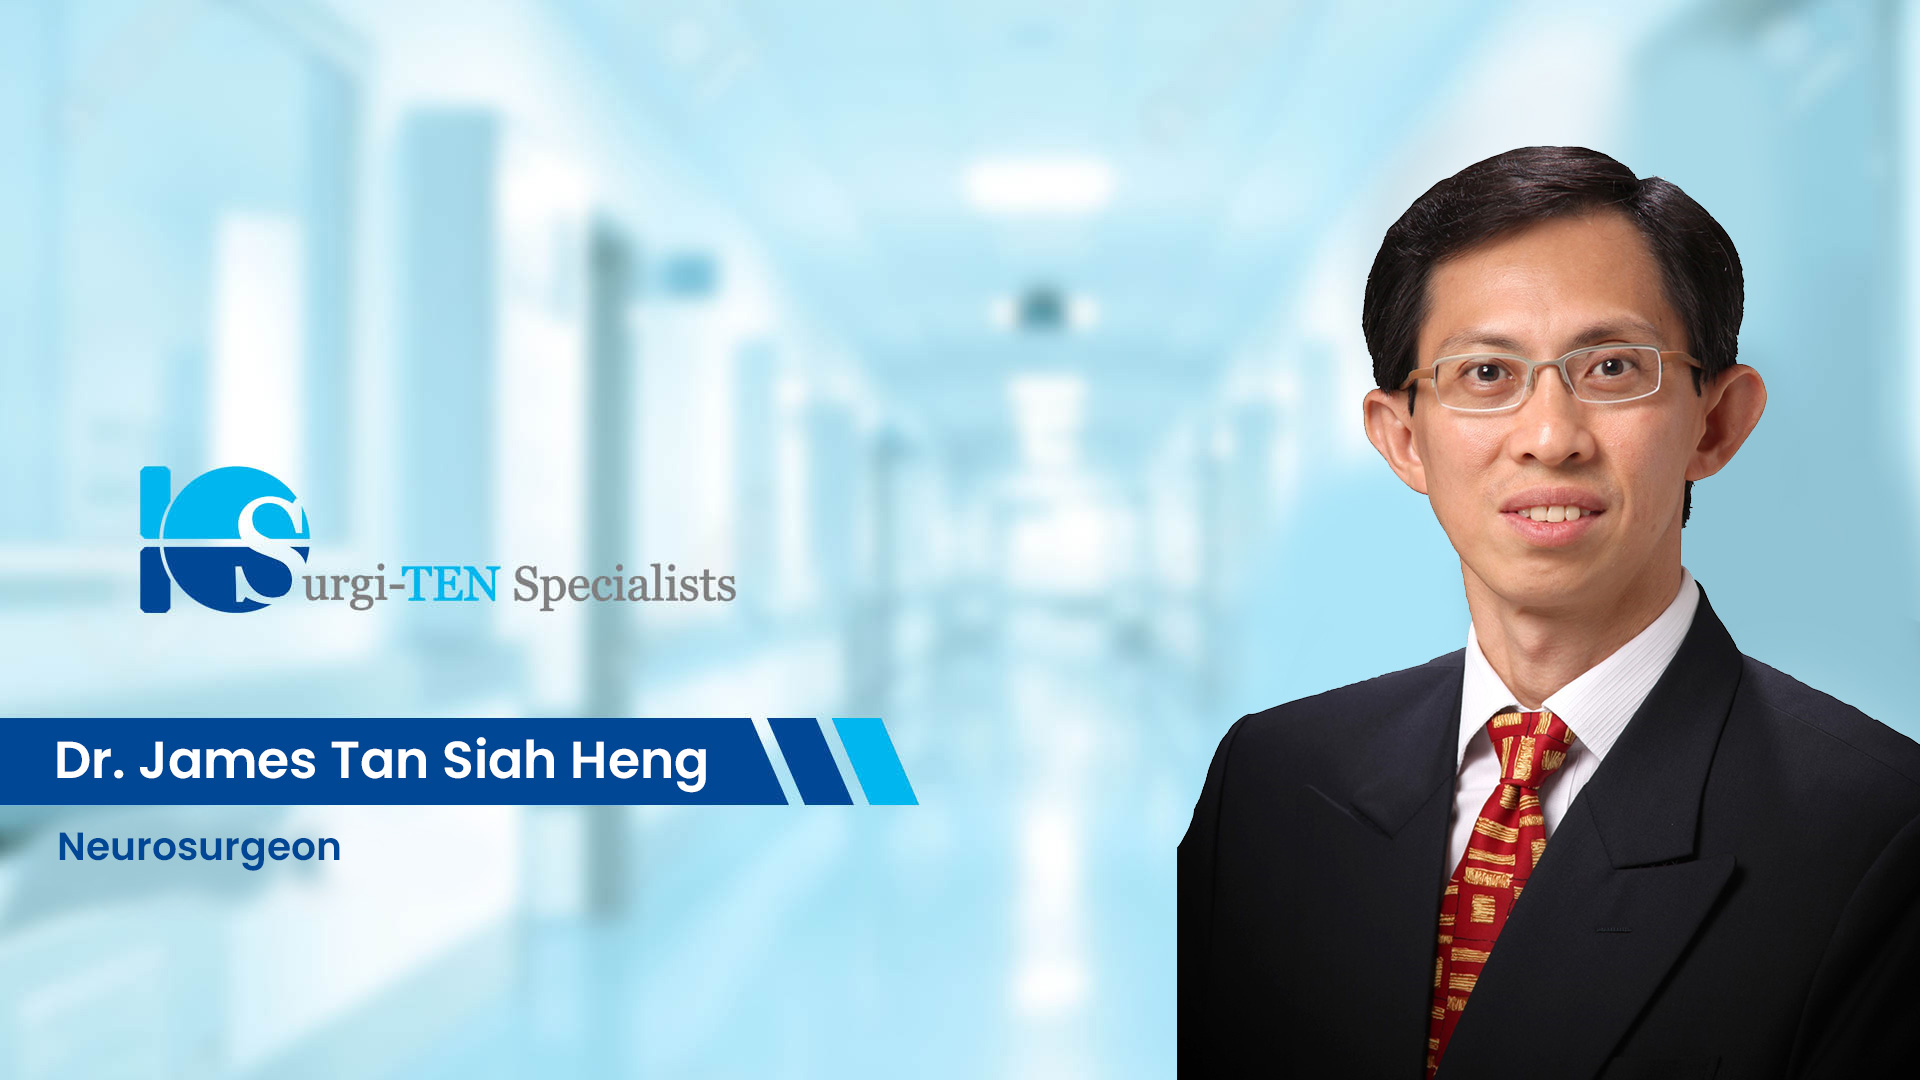 Dr James Tan Siah Heng - Neurosurgeon at Surgi-TEN